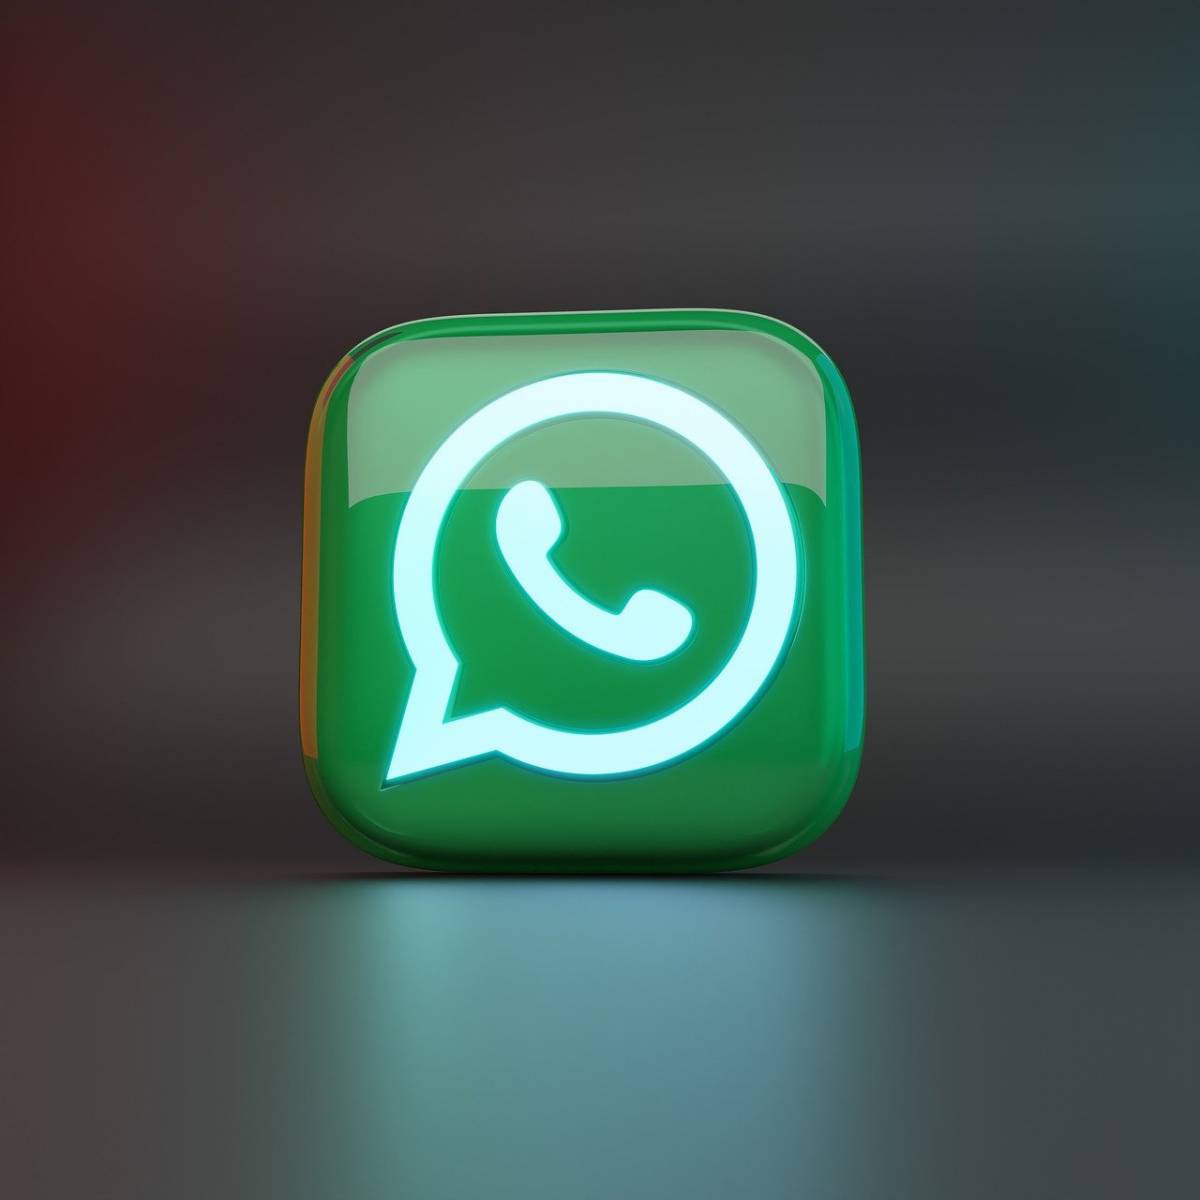 Un unico dispositivo per più account: l'ultima novità di WhatsApp